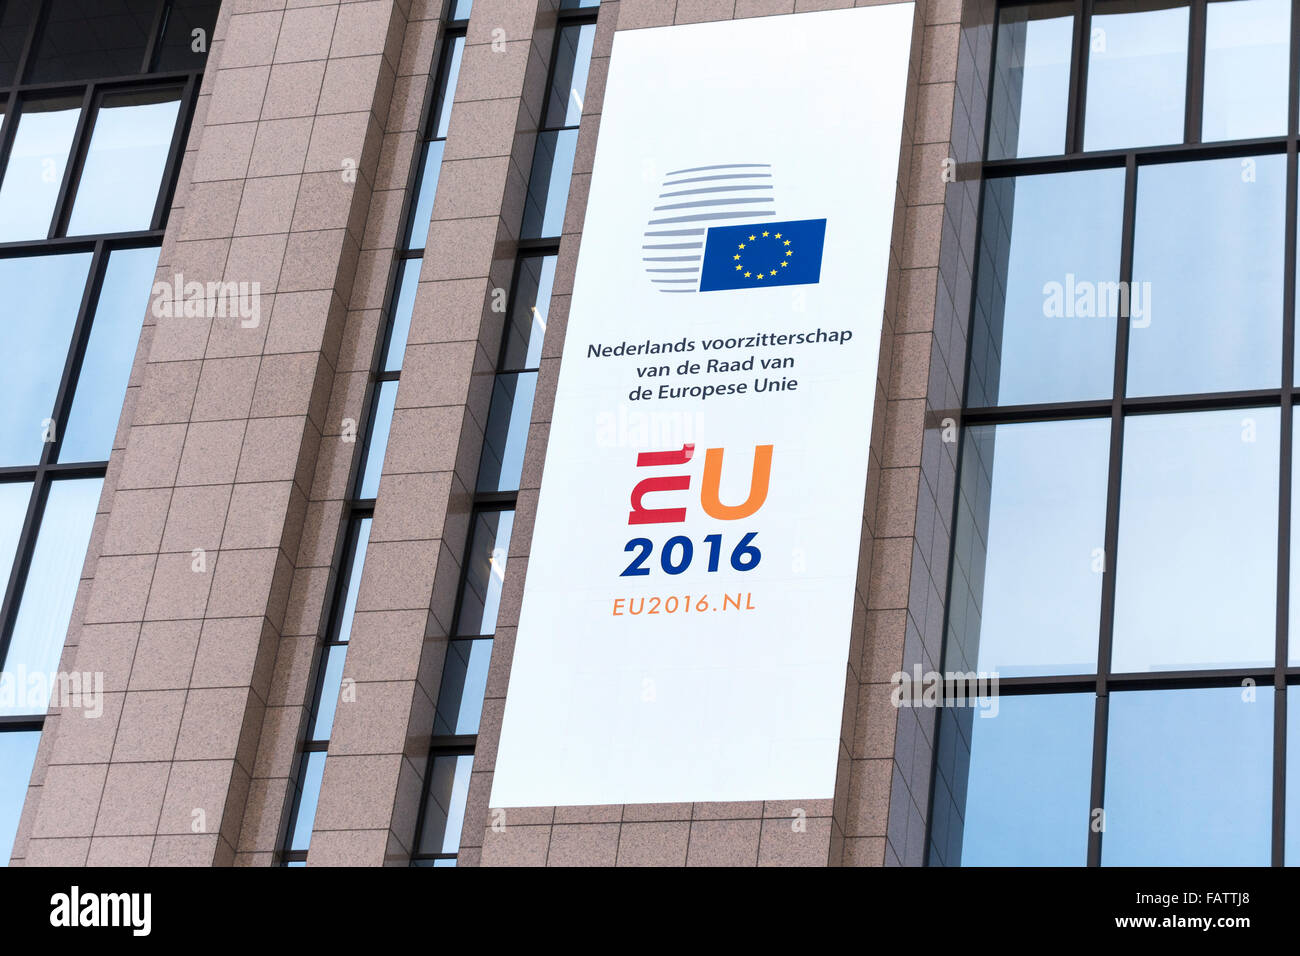 Présidence du Conseil de l'Union néerlandaise Bruxelles 2016 logo banner sur le Conseil européen à Bruxelles Belgique le 1er janvier 2016. Banque D'Images